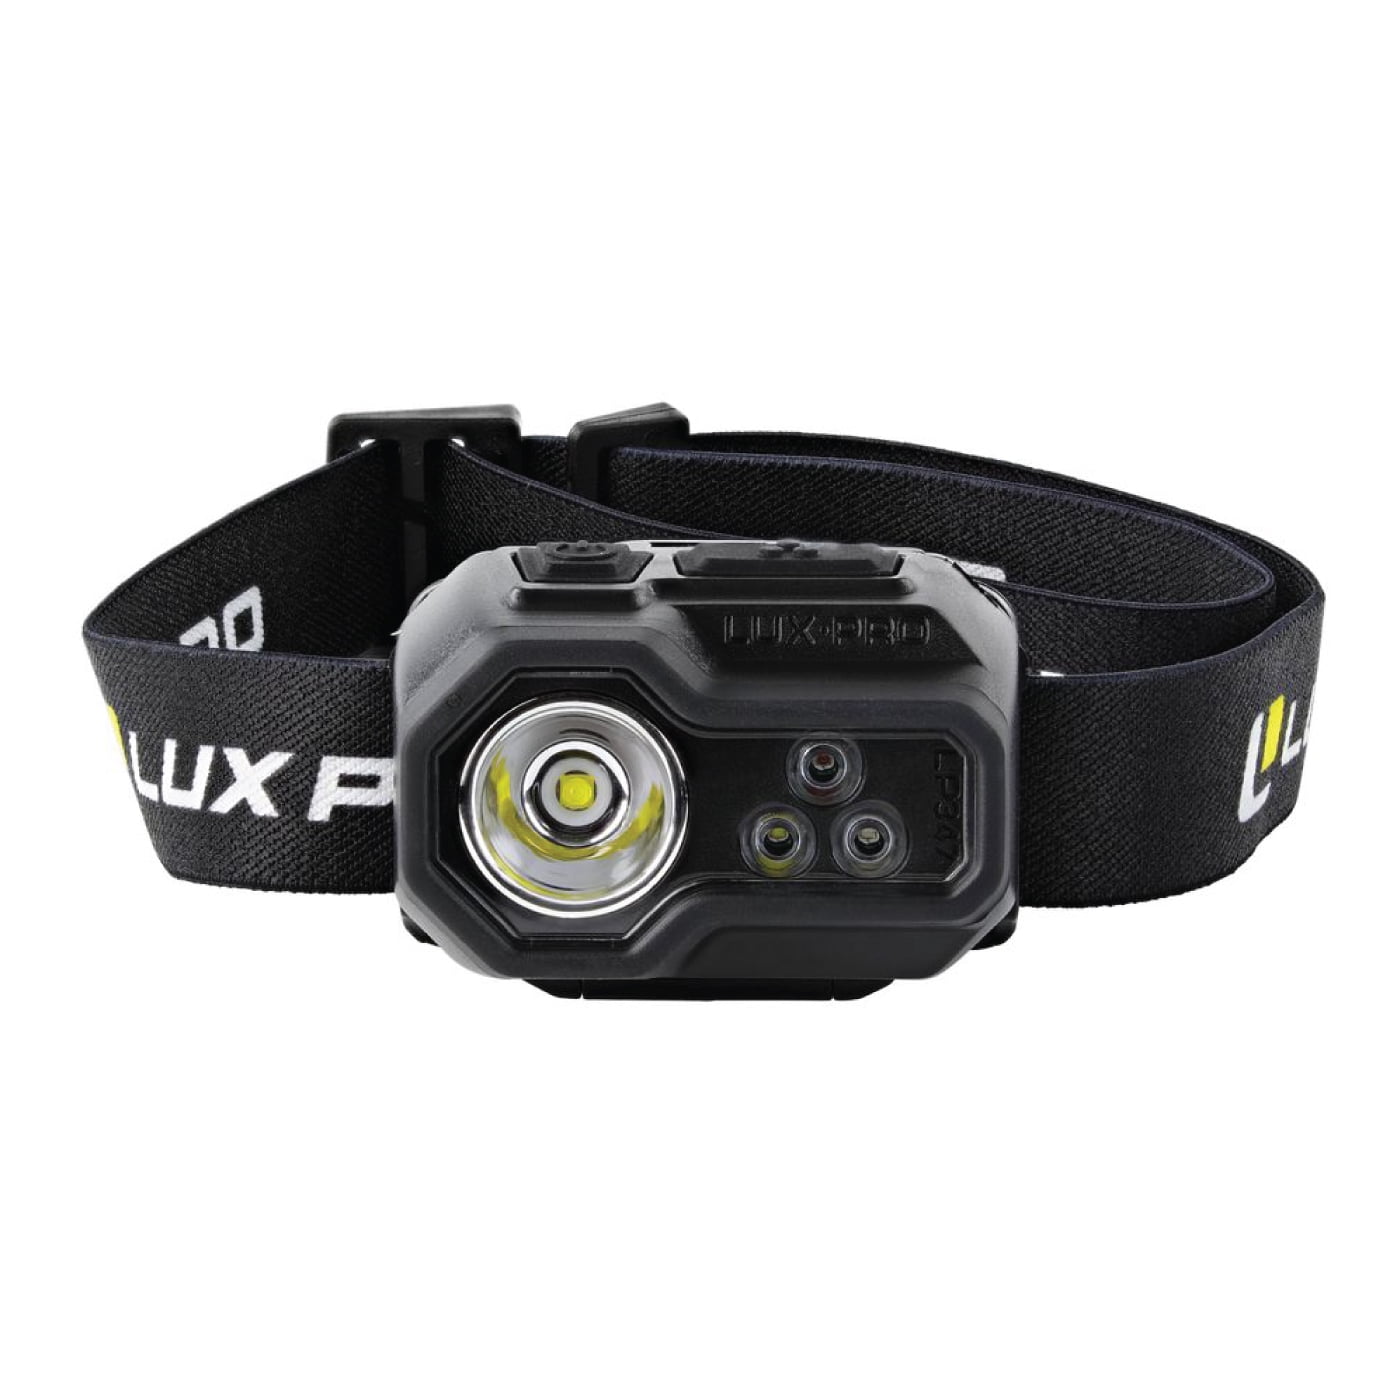 Lux-pro LP346 Multi Mode 300 Lumen LED Headlamp for sale online